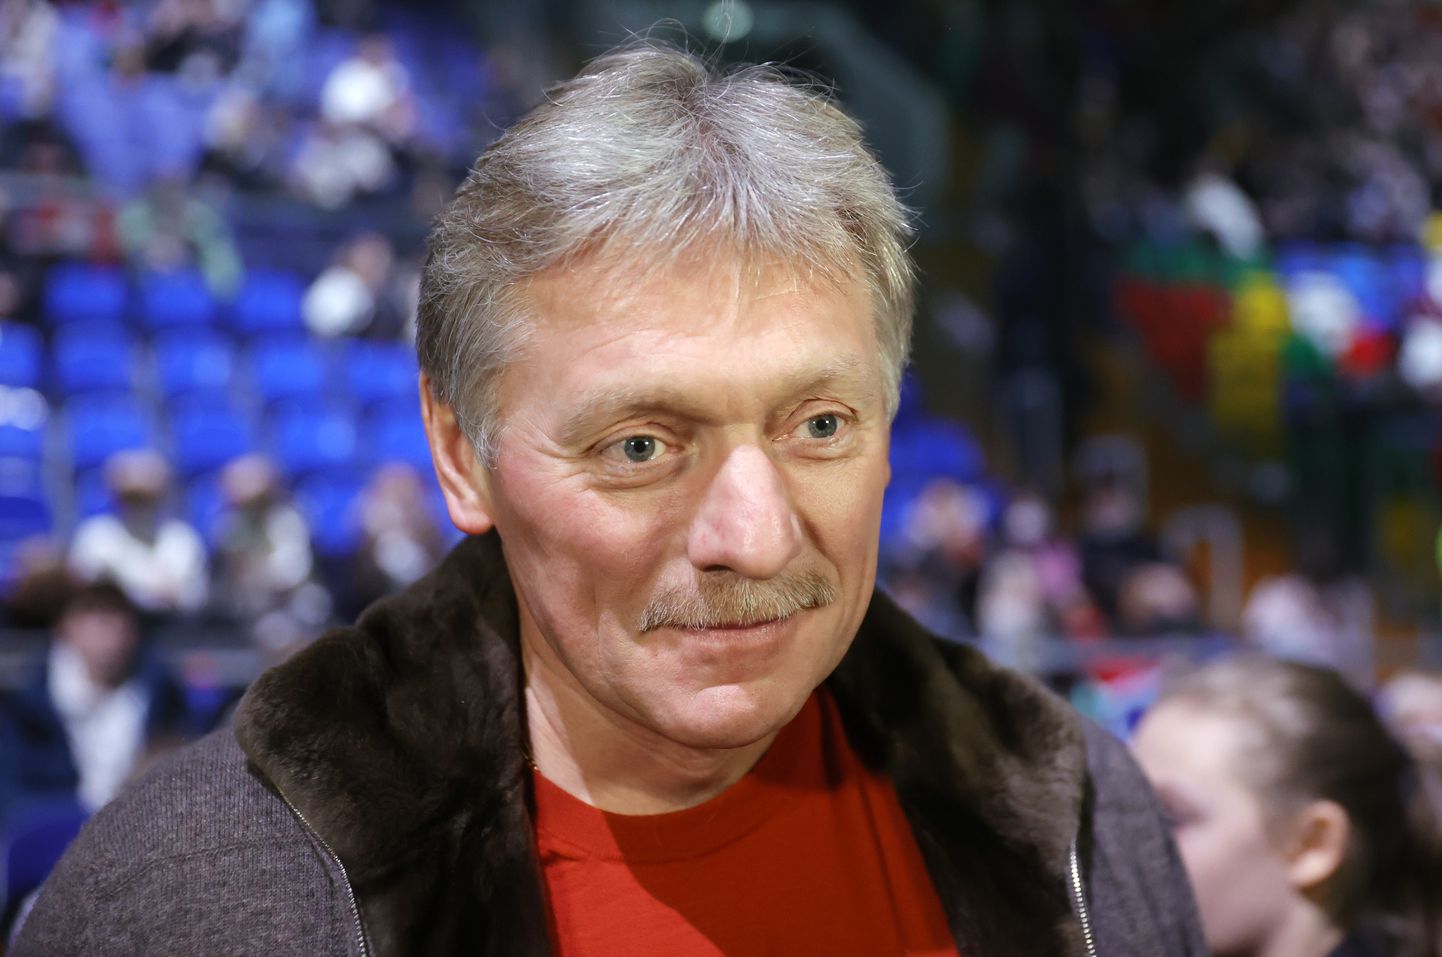 Дмитрий Песков.